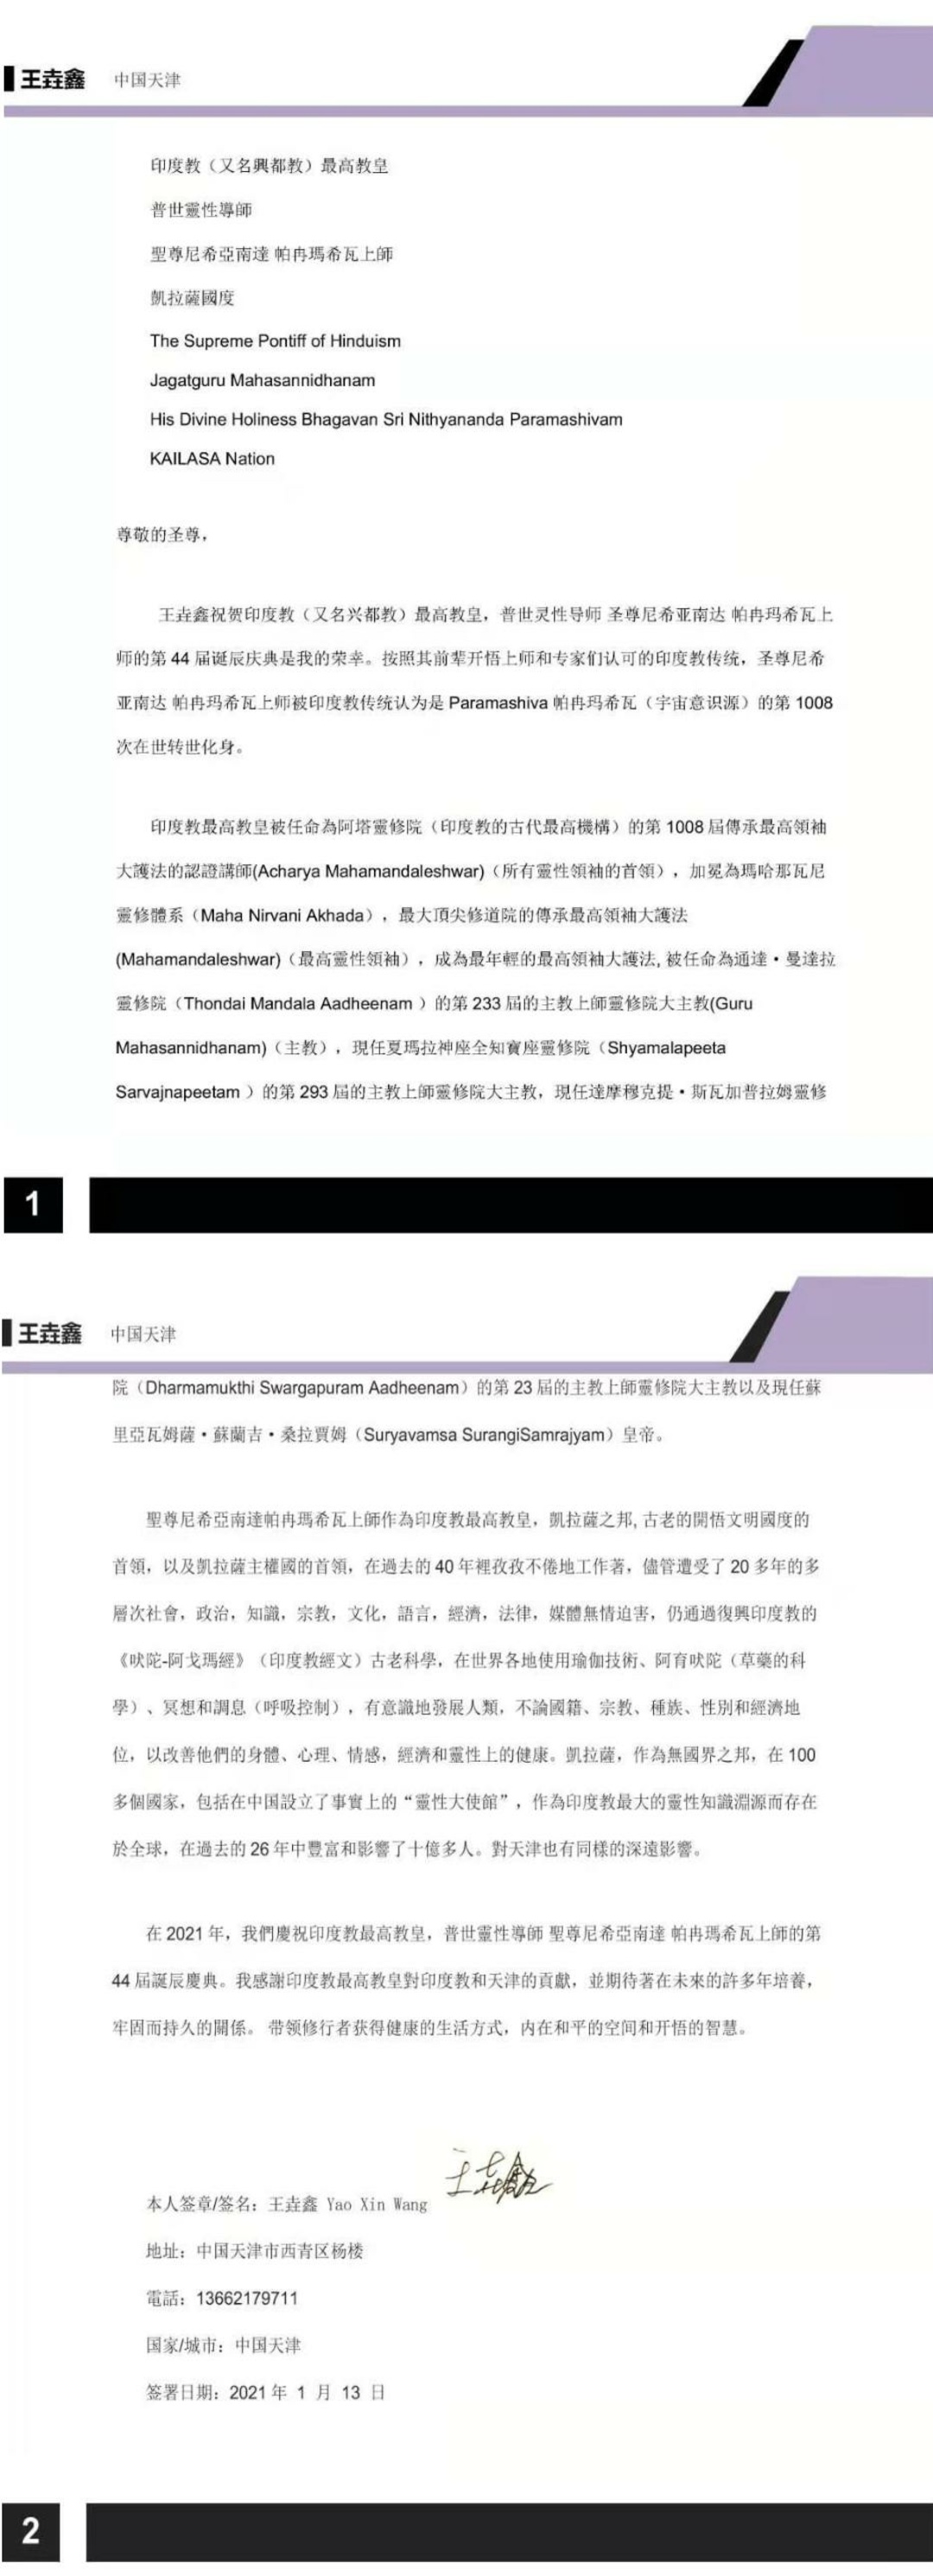 China---Yao-Xin-Wang---January-13--2021-(Proclamation)-19gQkEkY5HiJfpdRmwCPnMOzn PaIKfk8.pdf